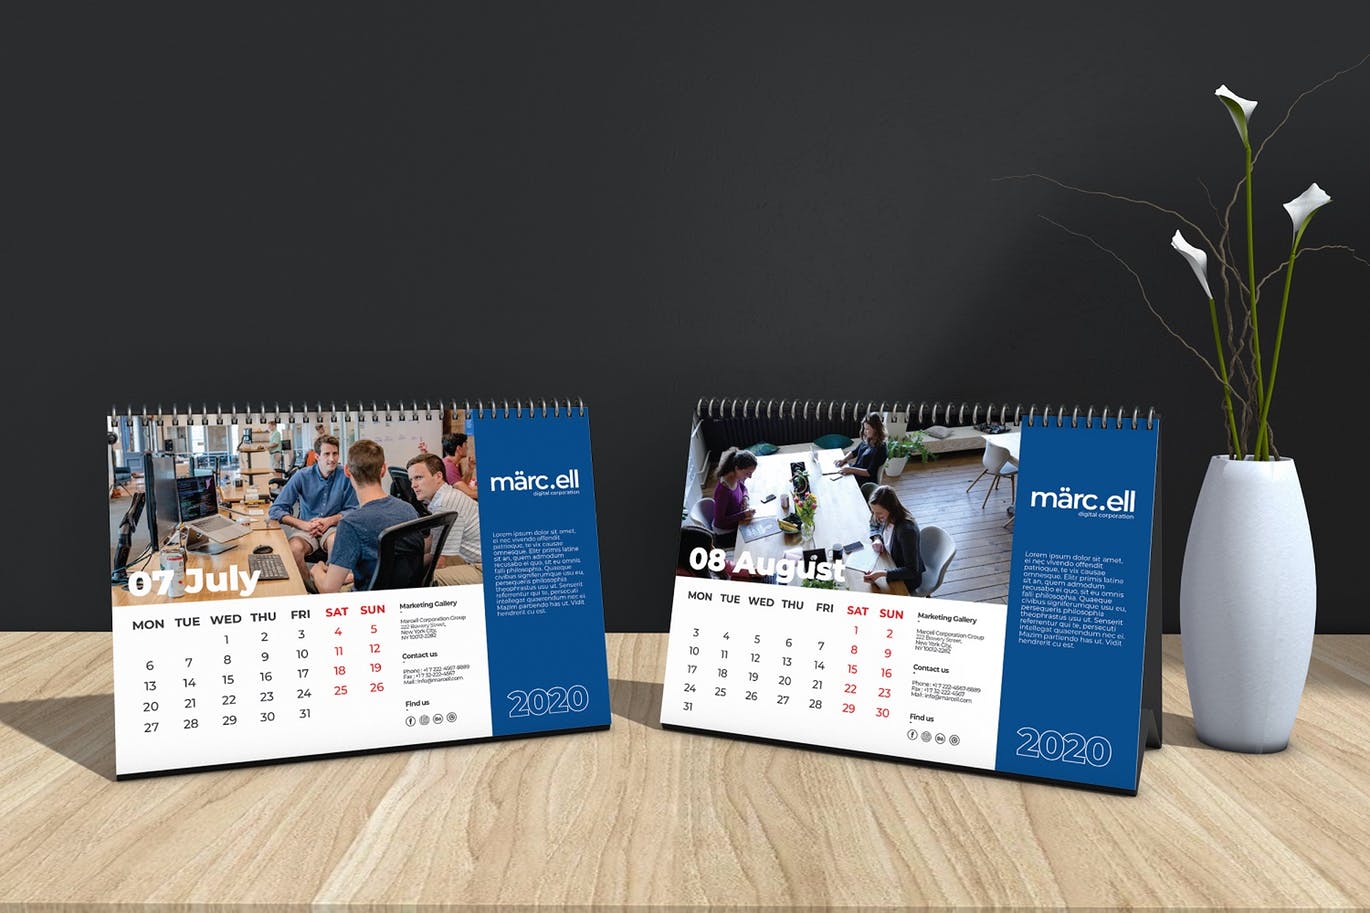 2020年深蓝色翻页台历表设计模板 Marcell Corporate Table Calendar 2020插图(5)